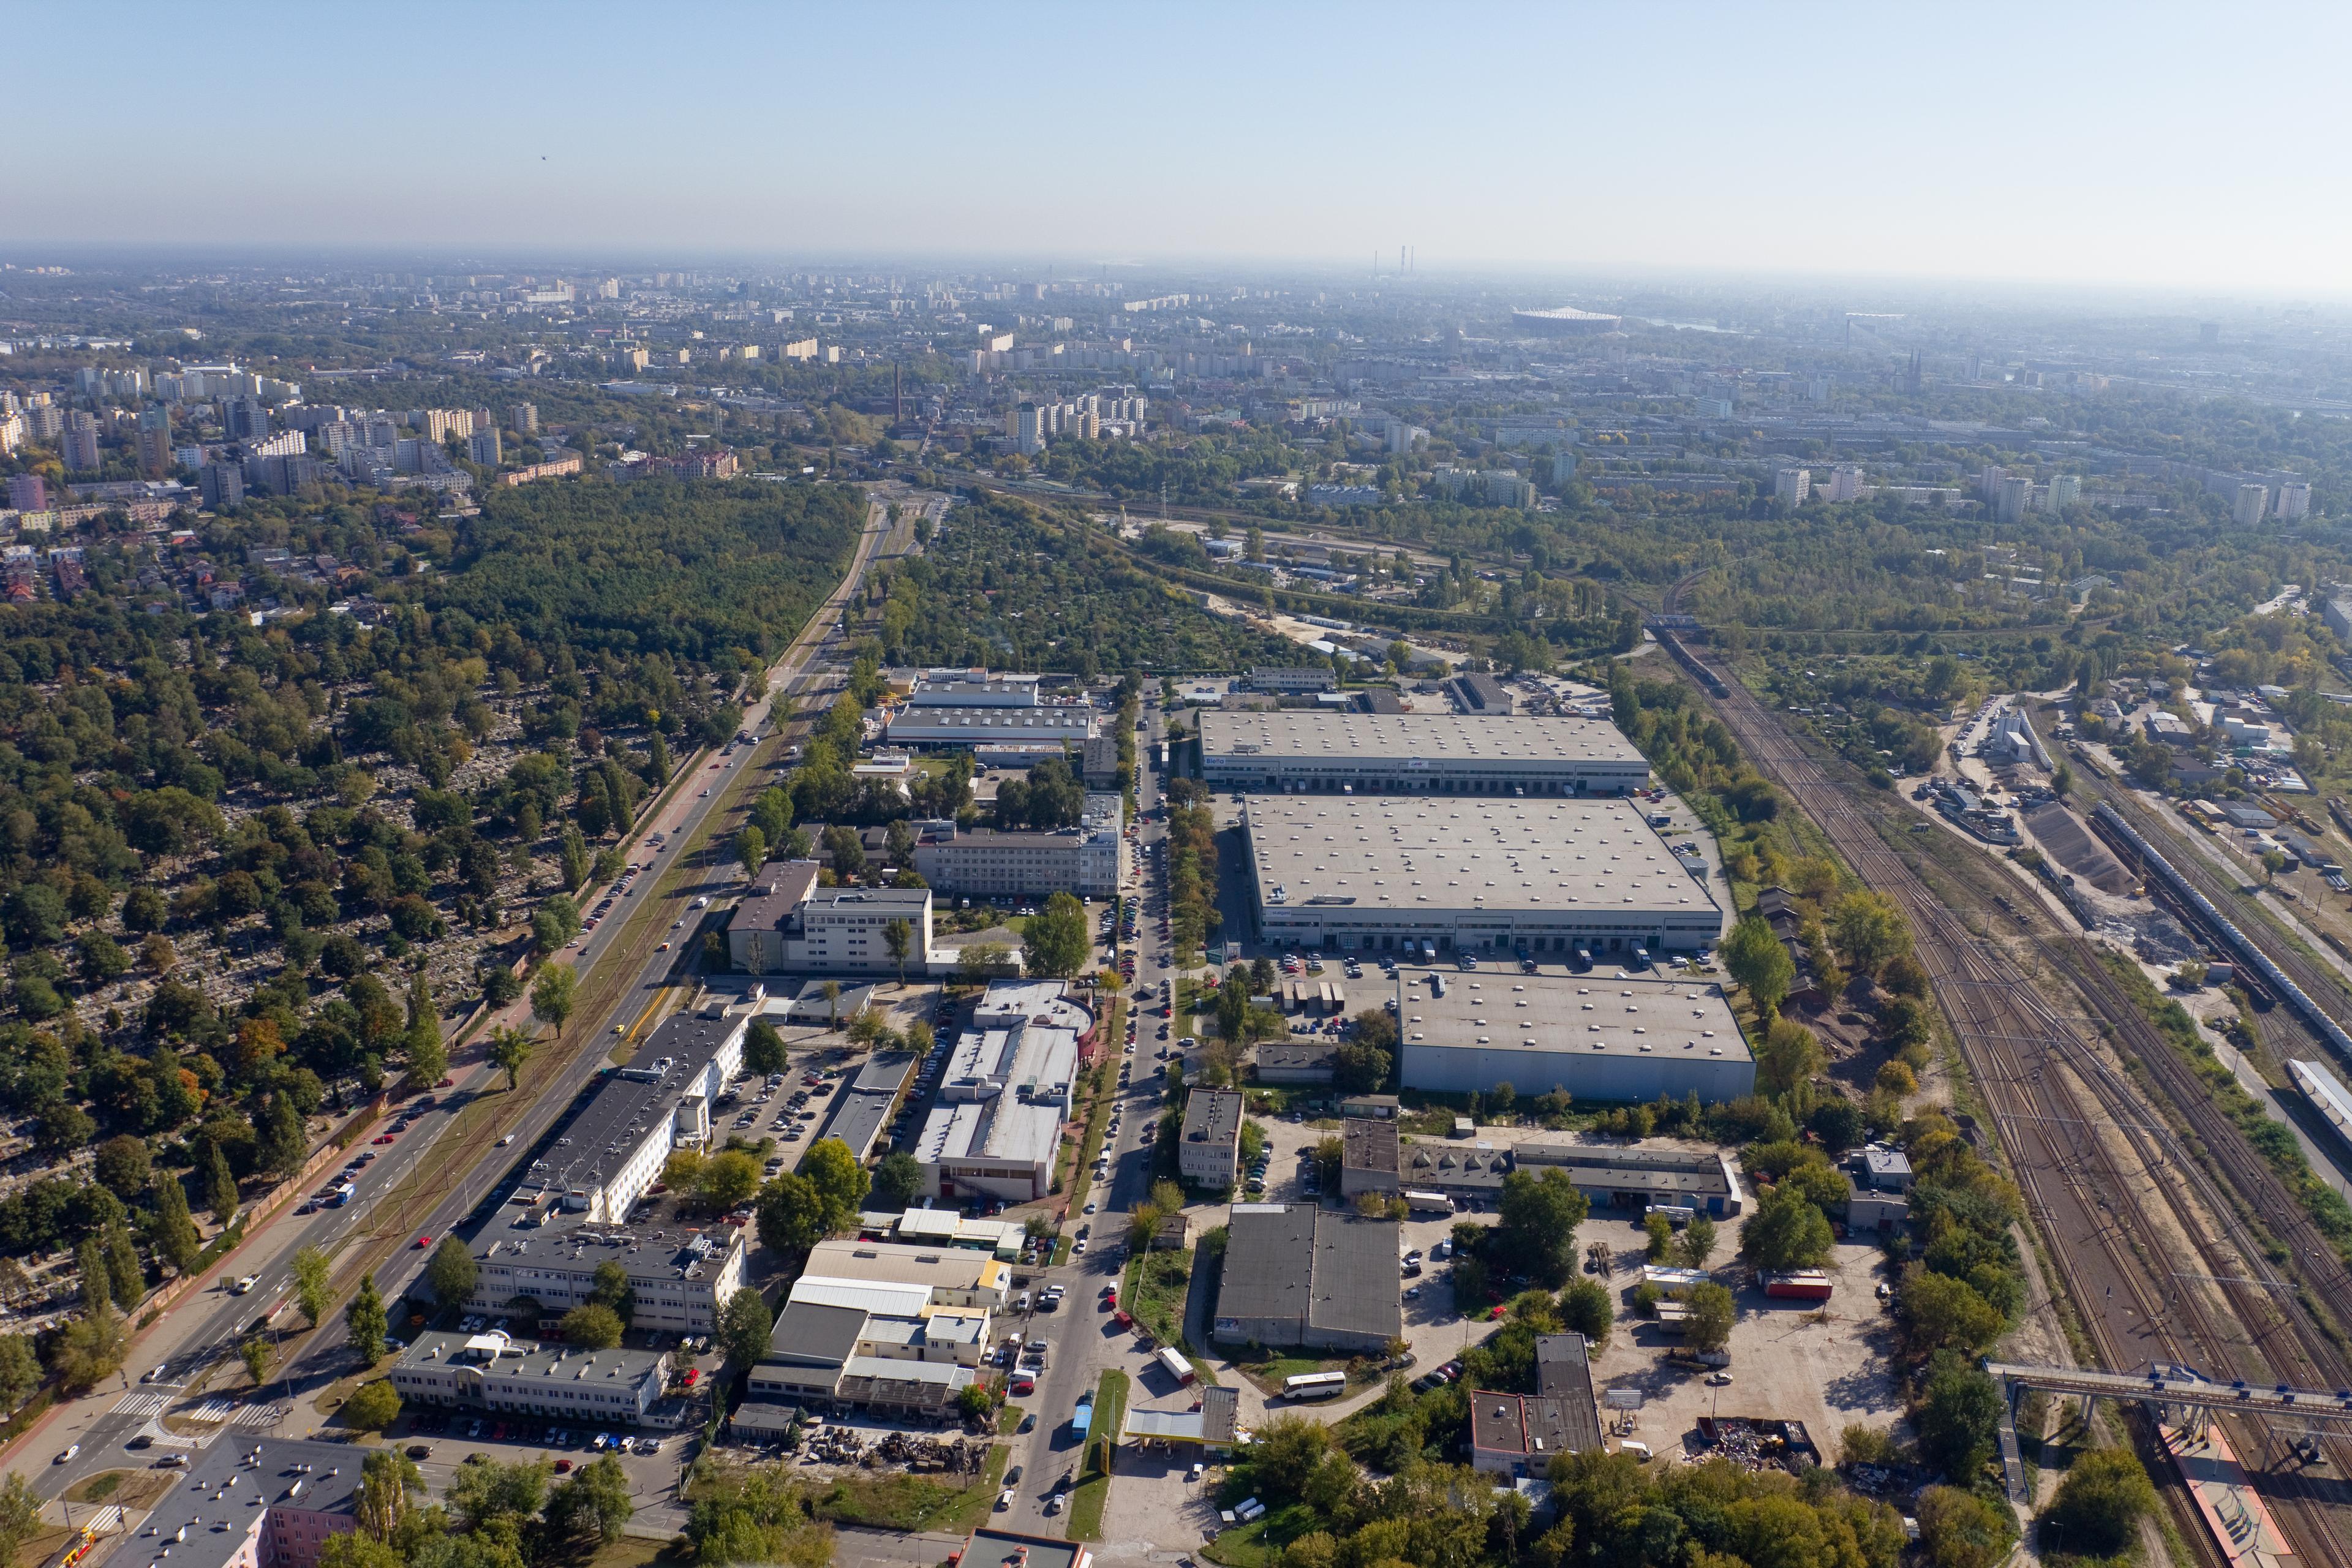 Zdjęcie lotnicze ukazuje kompleks magazynowy Prologis Park Warsaw II, usytuowany w przemysłowej dzielnicy Praga.